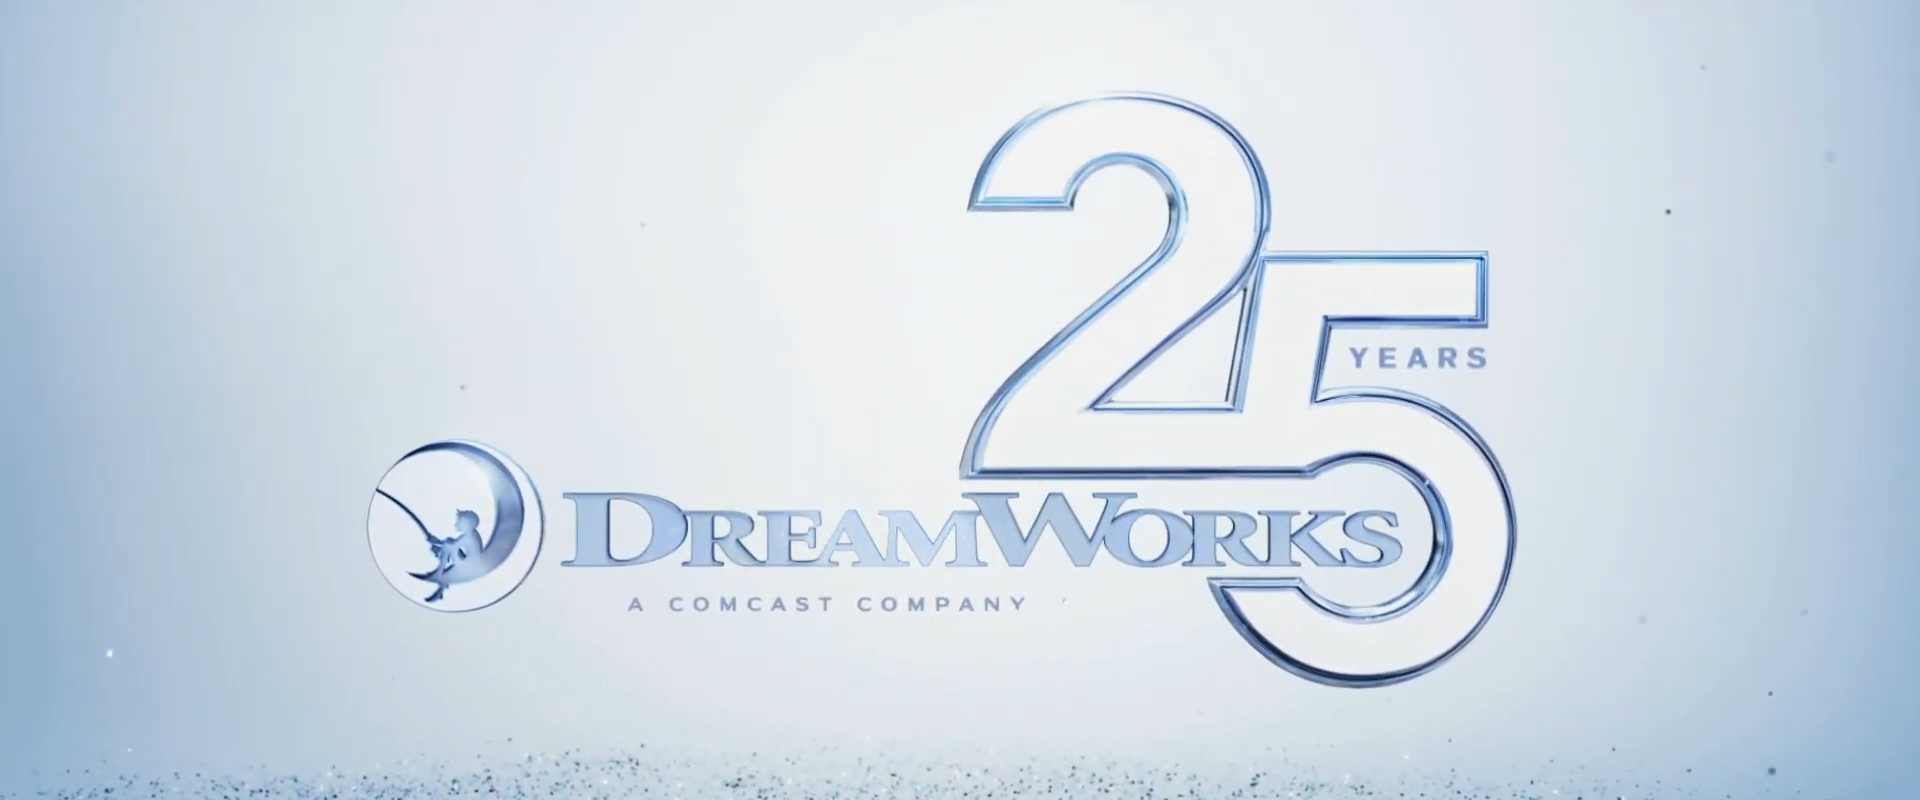 Включи 25 16. Dreamworks a Comcast Company logo. Dreamworks 25 years logo. Dreamworks animation SKG A Comcast Company. Dreamworks animation 25 years.